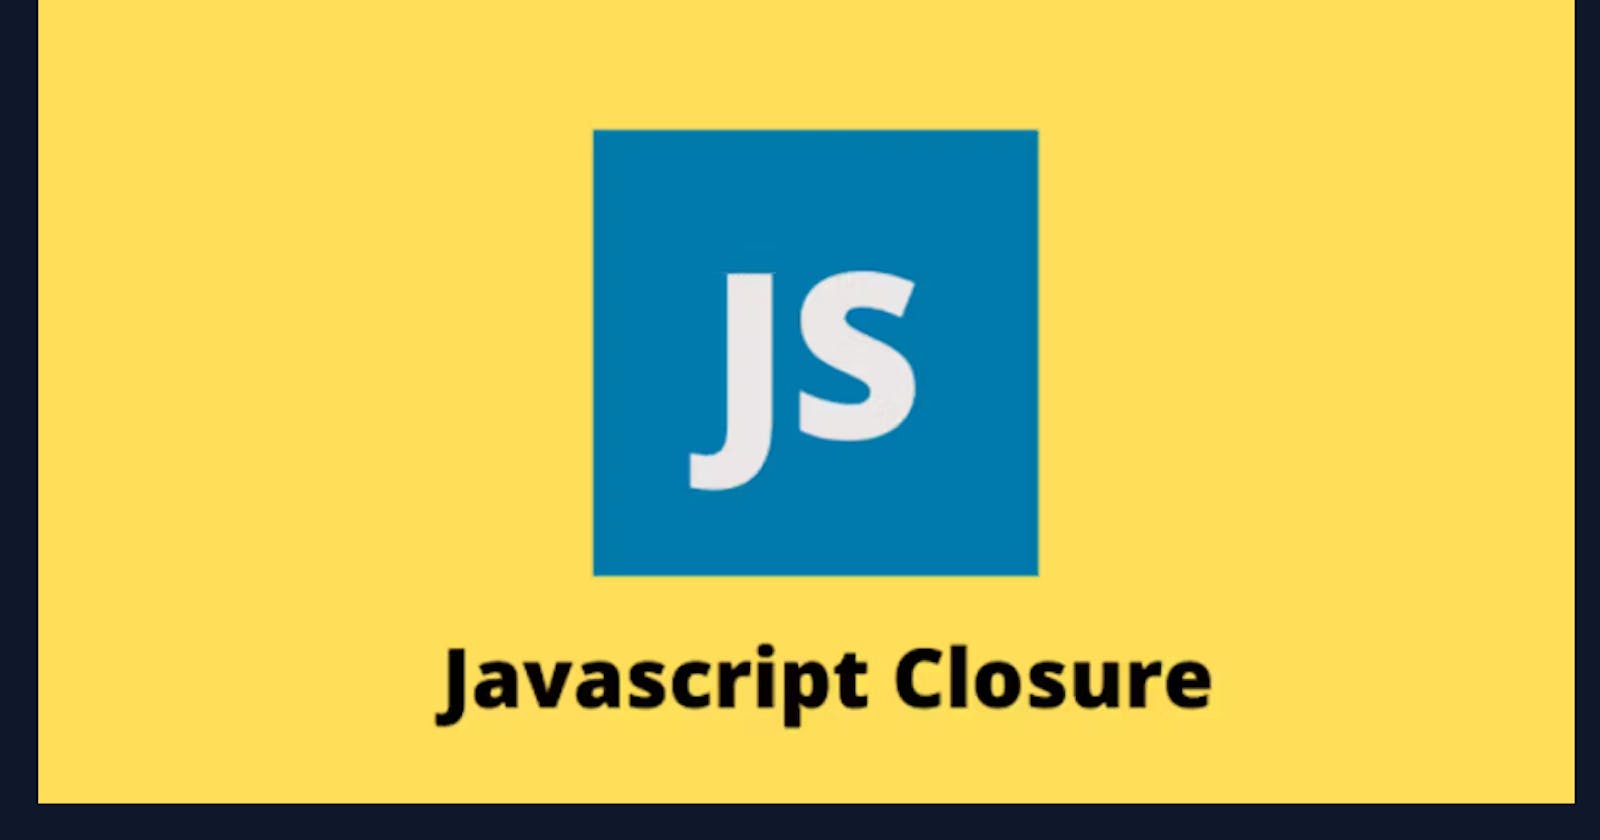 Closure in javascript